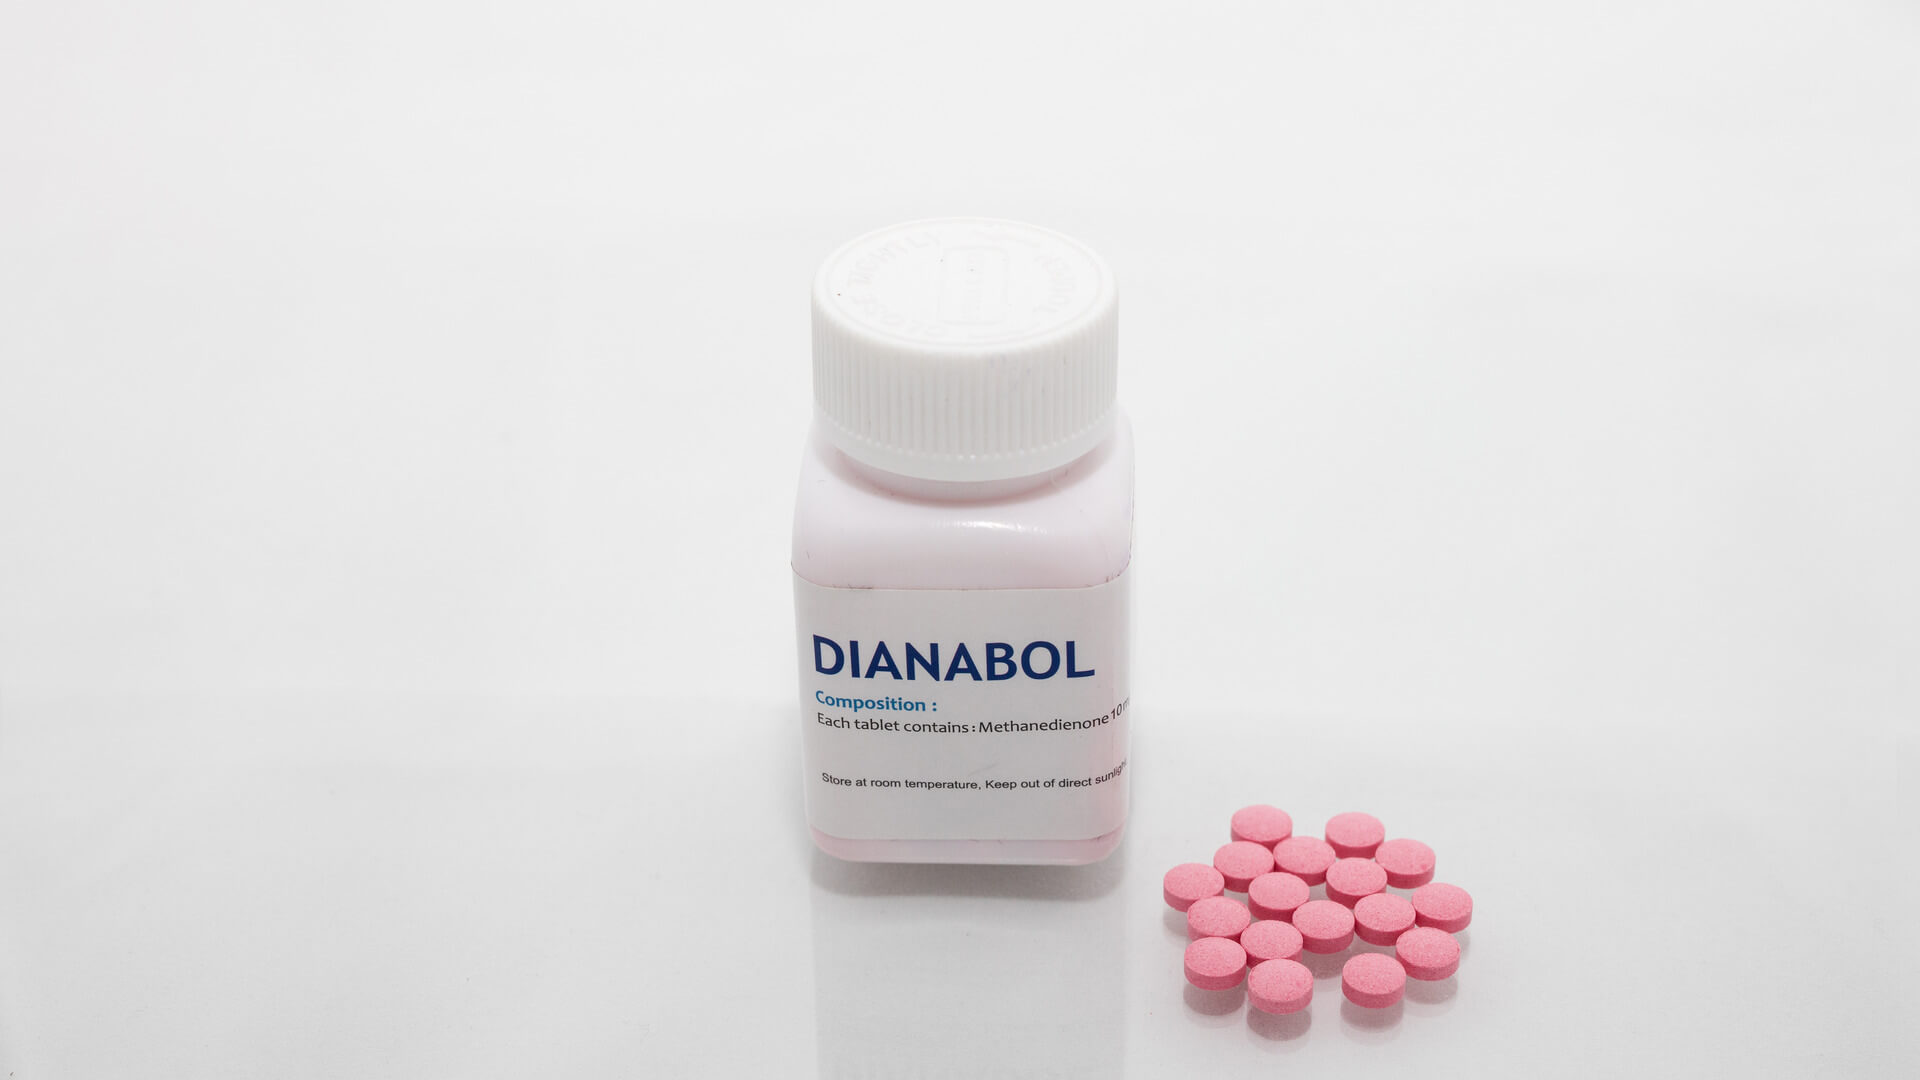 dianabol pills